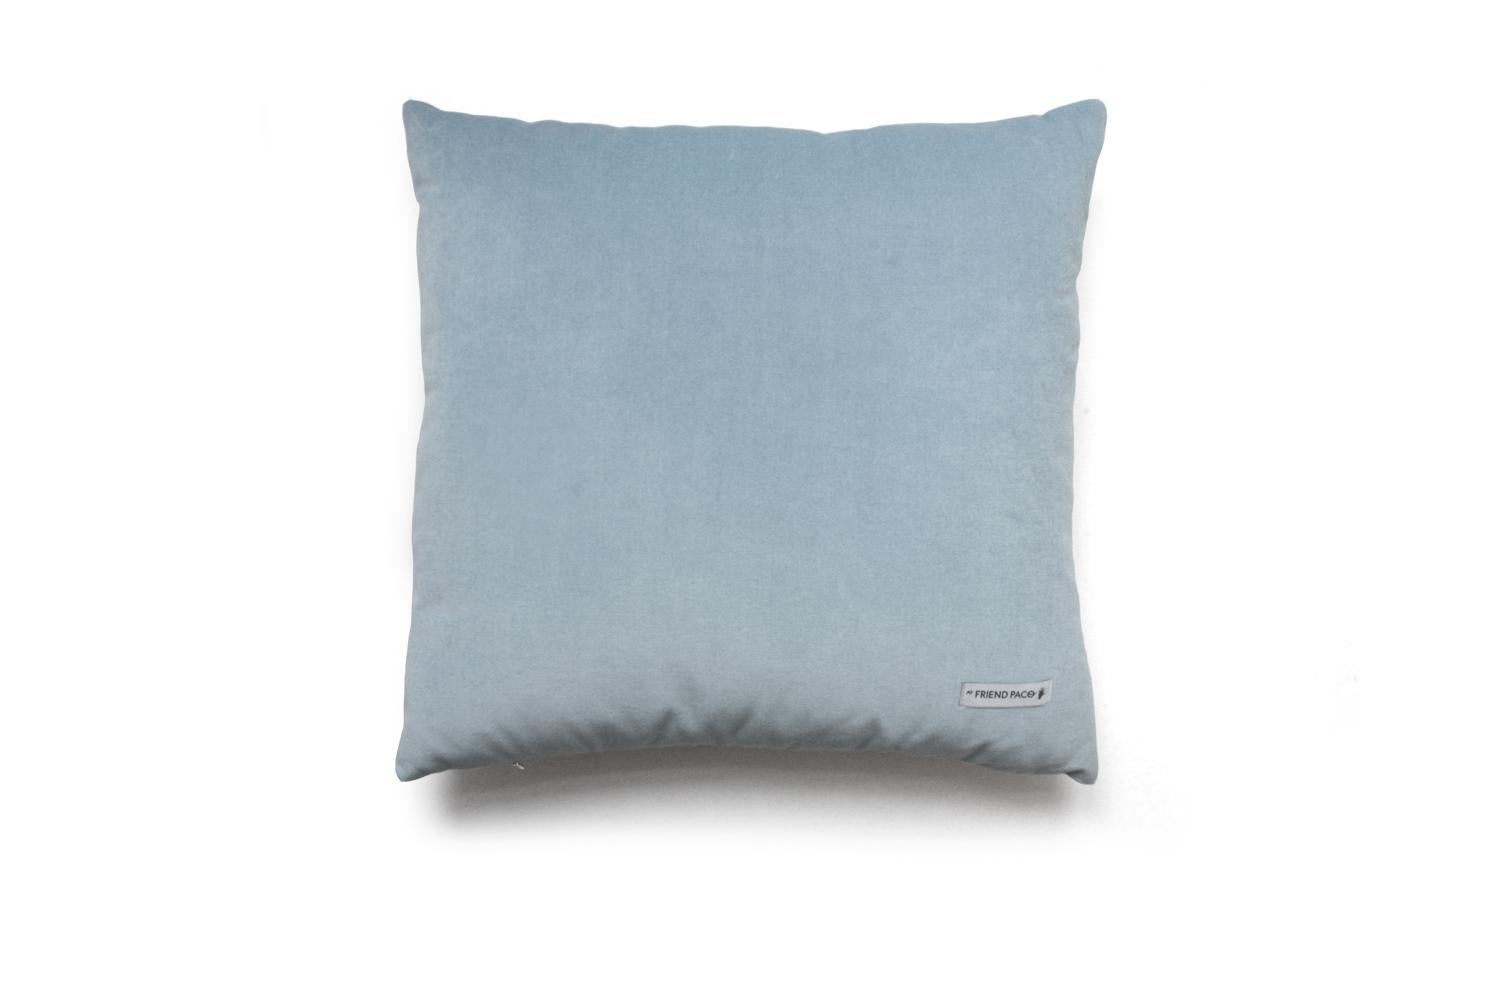 Sunrise Velvet Deluxe Handmade Decorative Pillow In New Condition For Sale In Viseu, PT